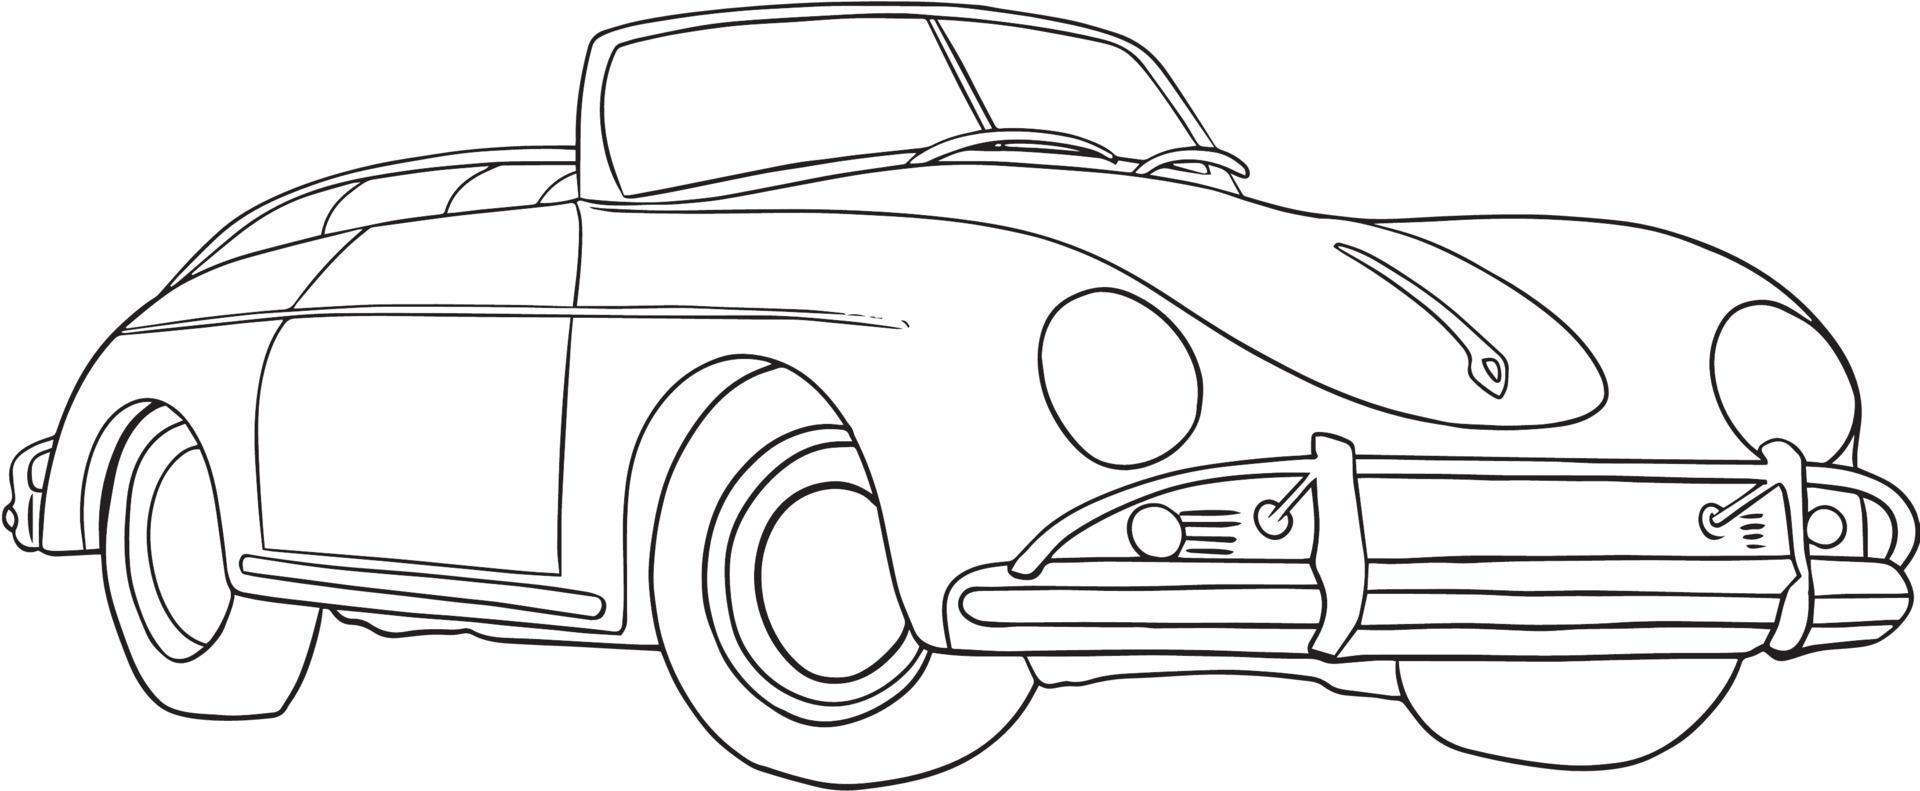 antieke oude vintage auto lijntekeningen schets illustratie vector